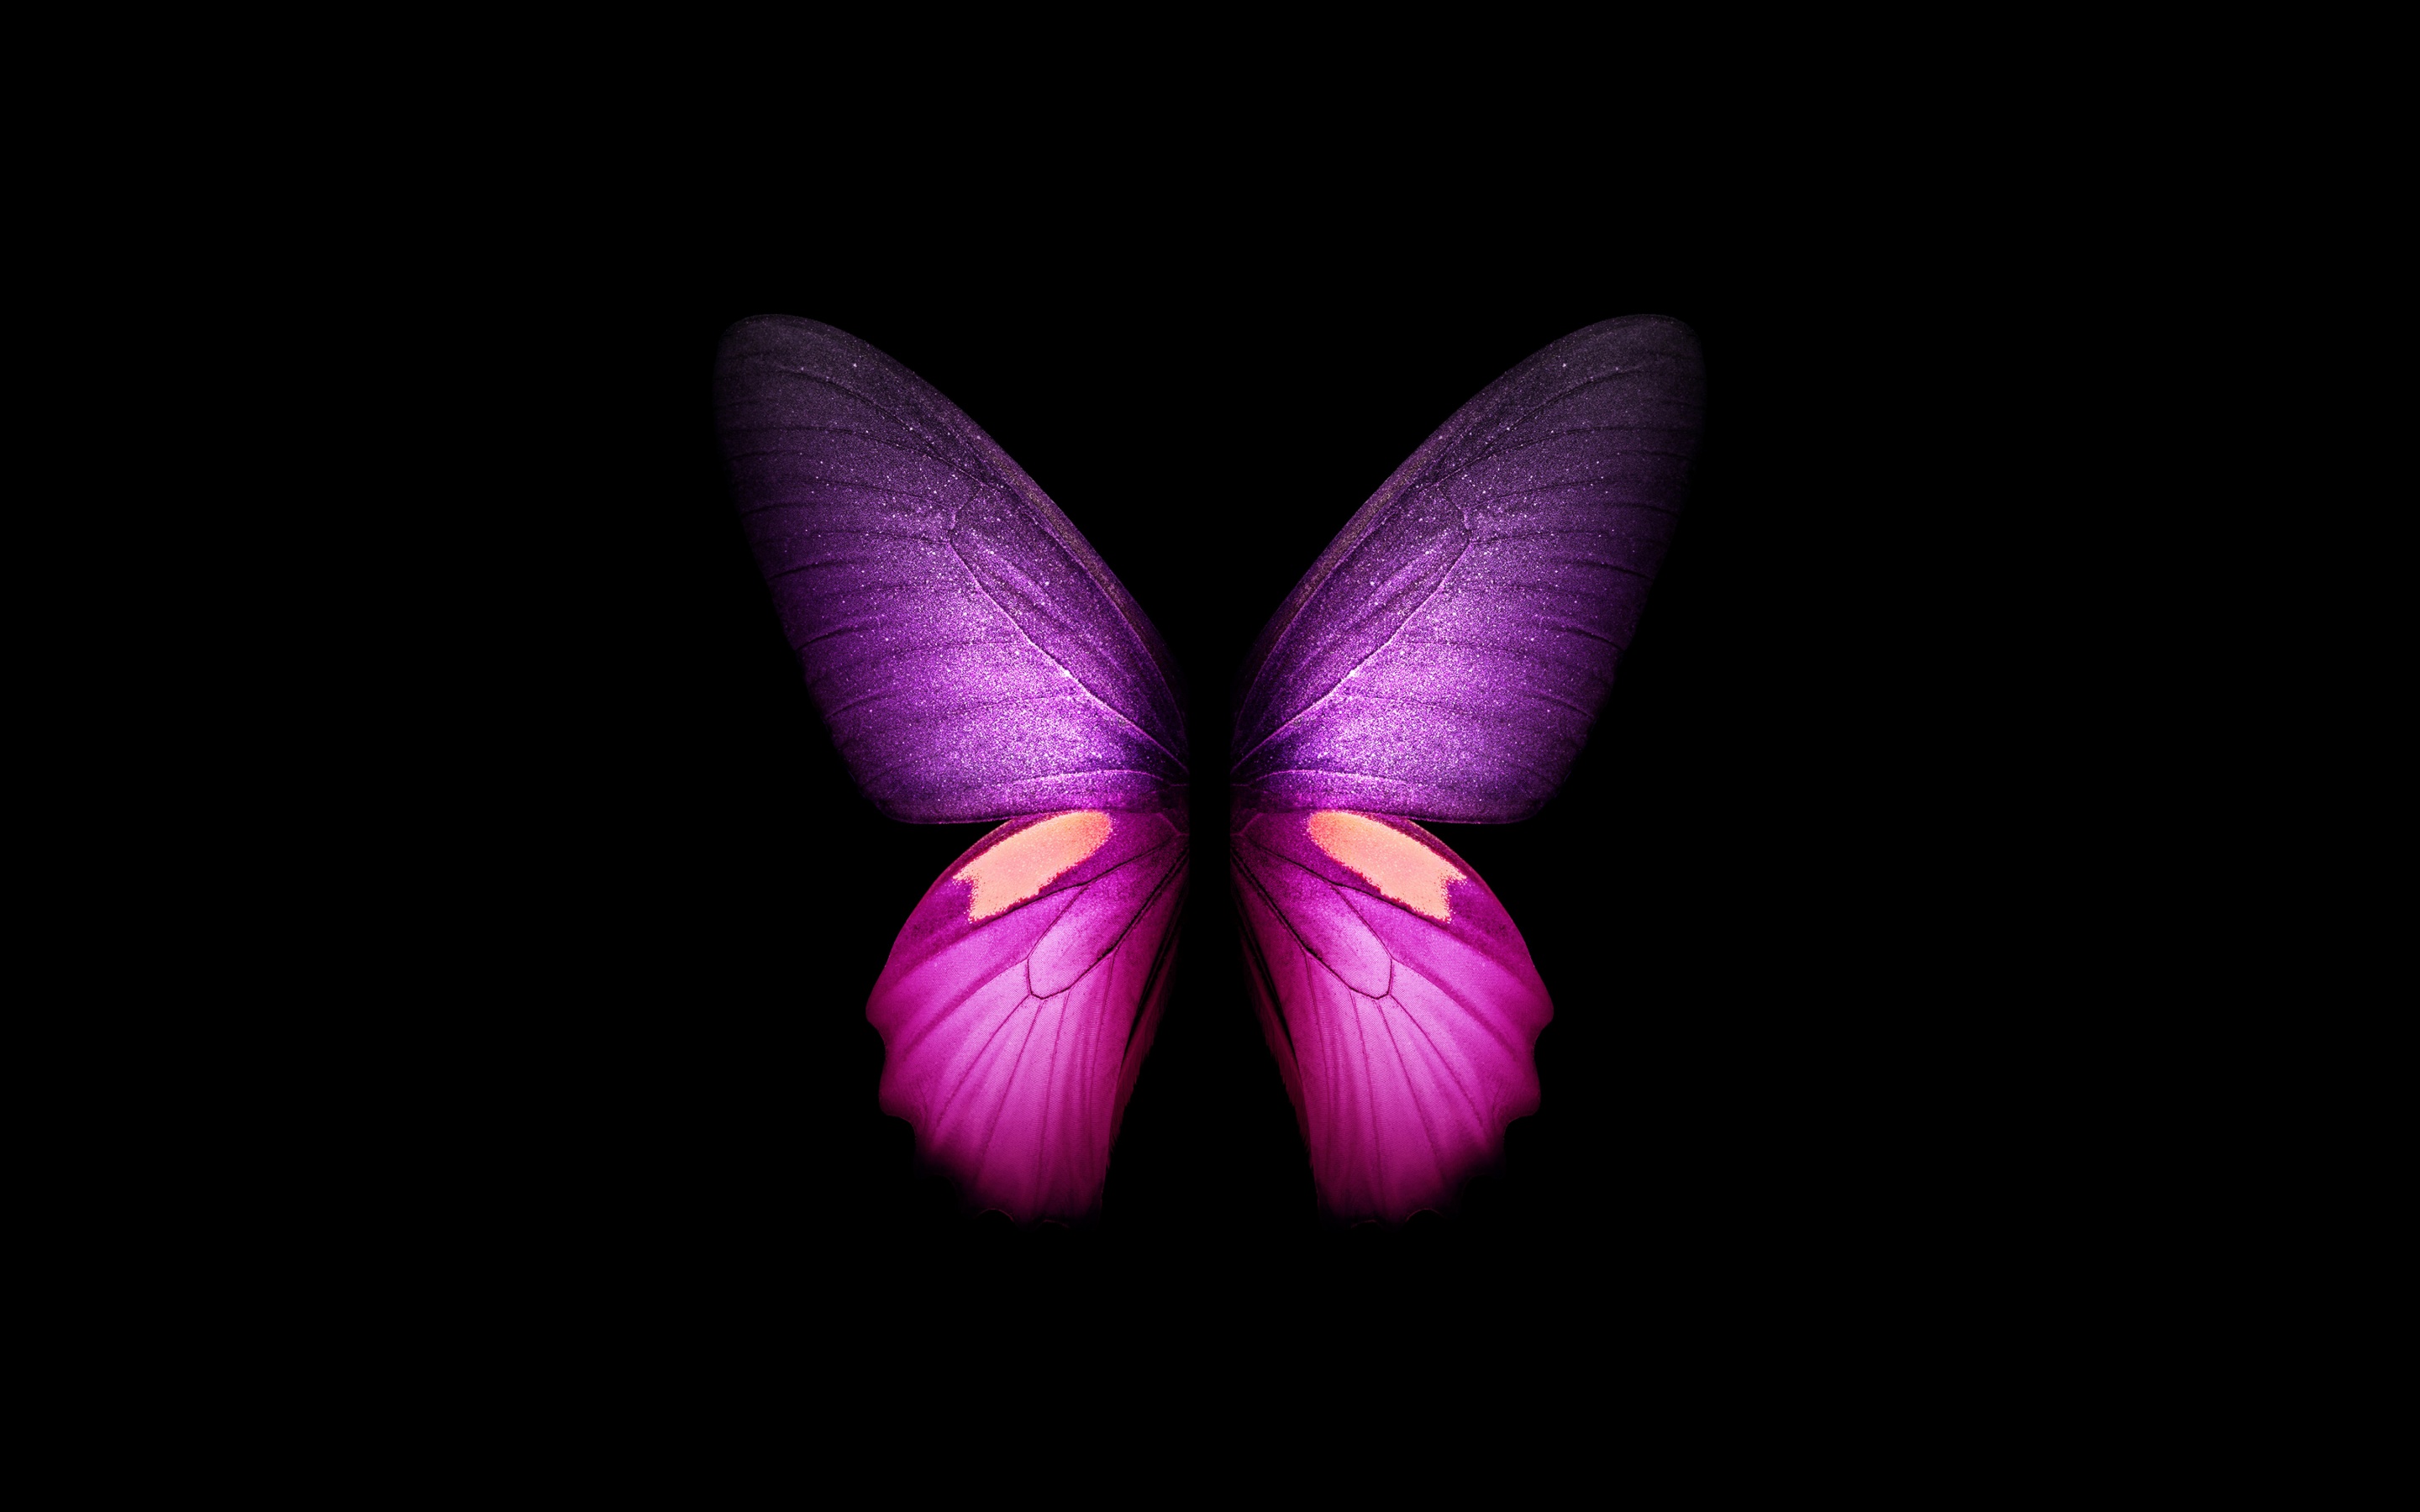 Hình nền bướm màu tím 4K, cánh, nền đen, đồ họa... sẽ làm cho màn hình của bạn trở nên sống động và chân thực hơn. Với độ phân giải cao và đồ họa tuyệt vời, hình nền này sẽ mang lại cho bạn trải nghiệm thực sự tuyệt vời.